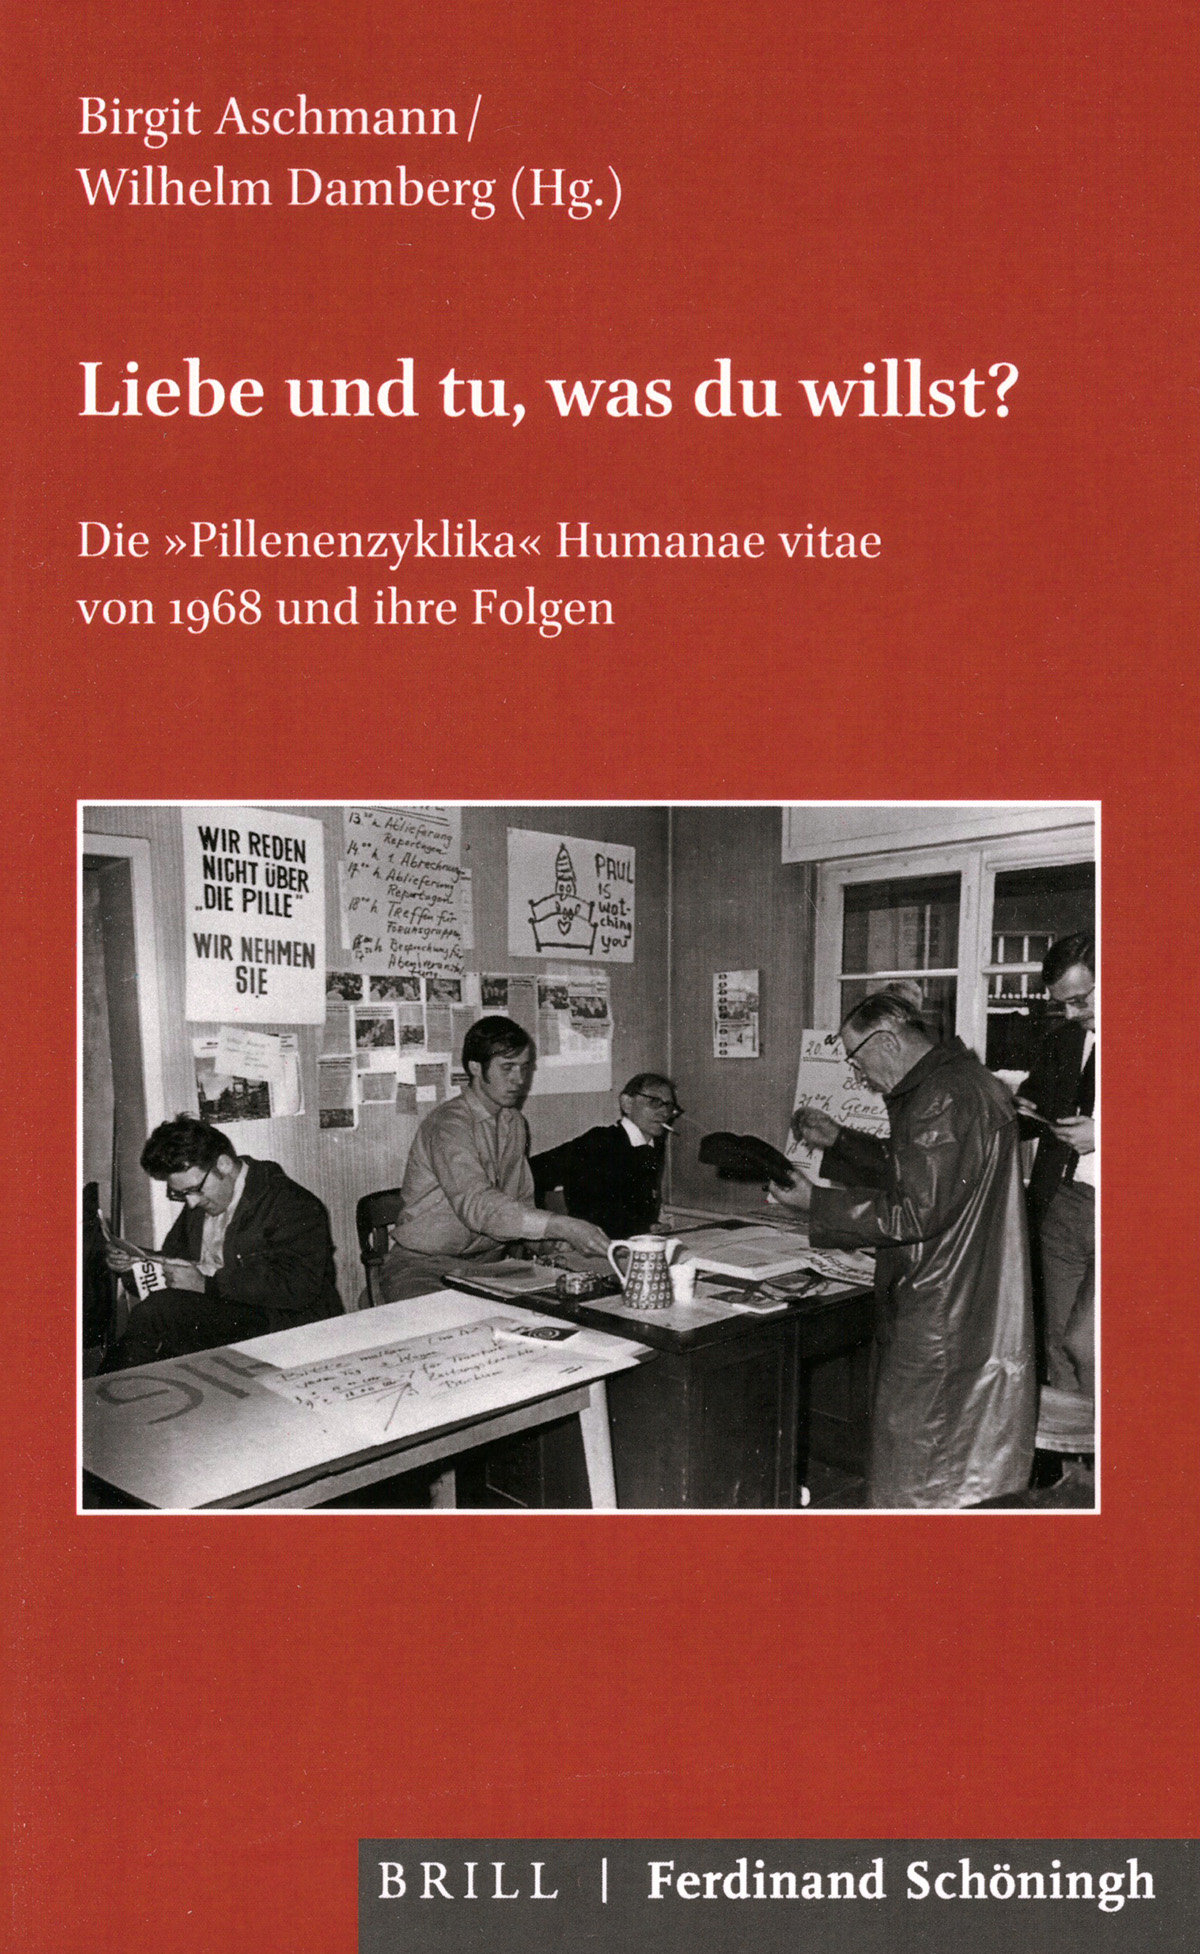 Aschmann, Birgit / Damberg, Wilhelm (Hg.): Liebe und tu, was du willst? Die »Pillenenzyklika« Humanae vitae von 1968 und ihre Folgen.